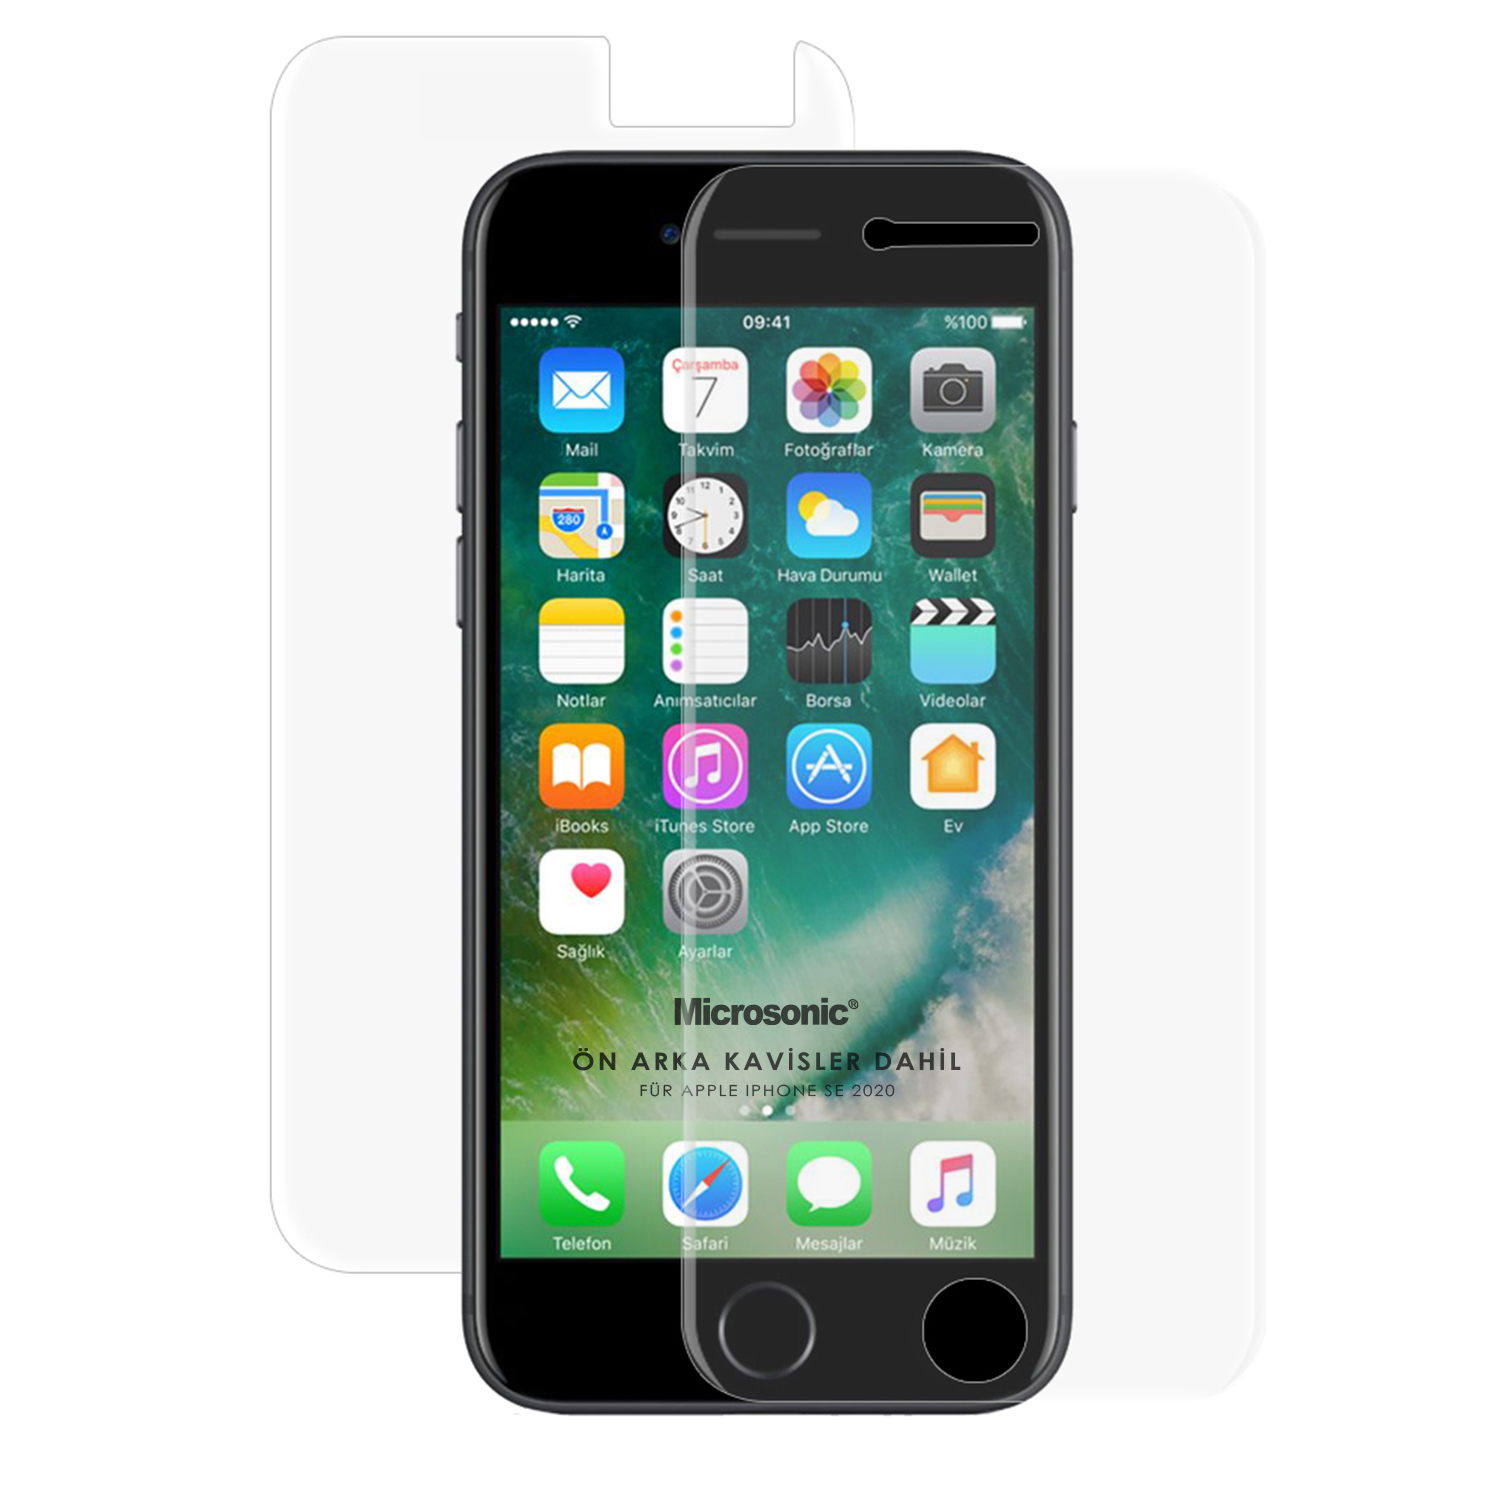 Microsonic Apple iPhone SE 2020 Ön Arka Kavisler Dahil Tam Ekran Kaplayıcı Film